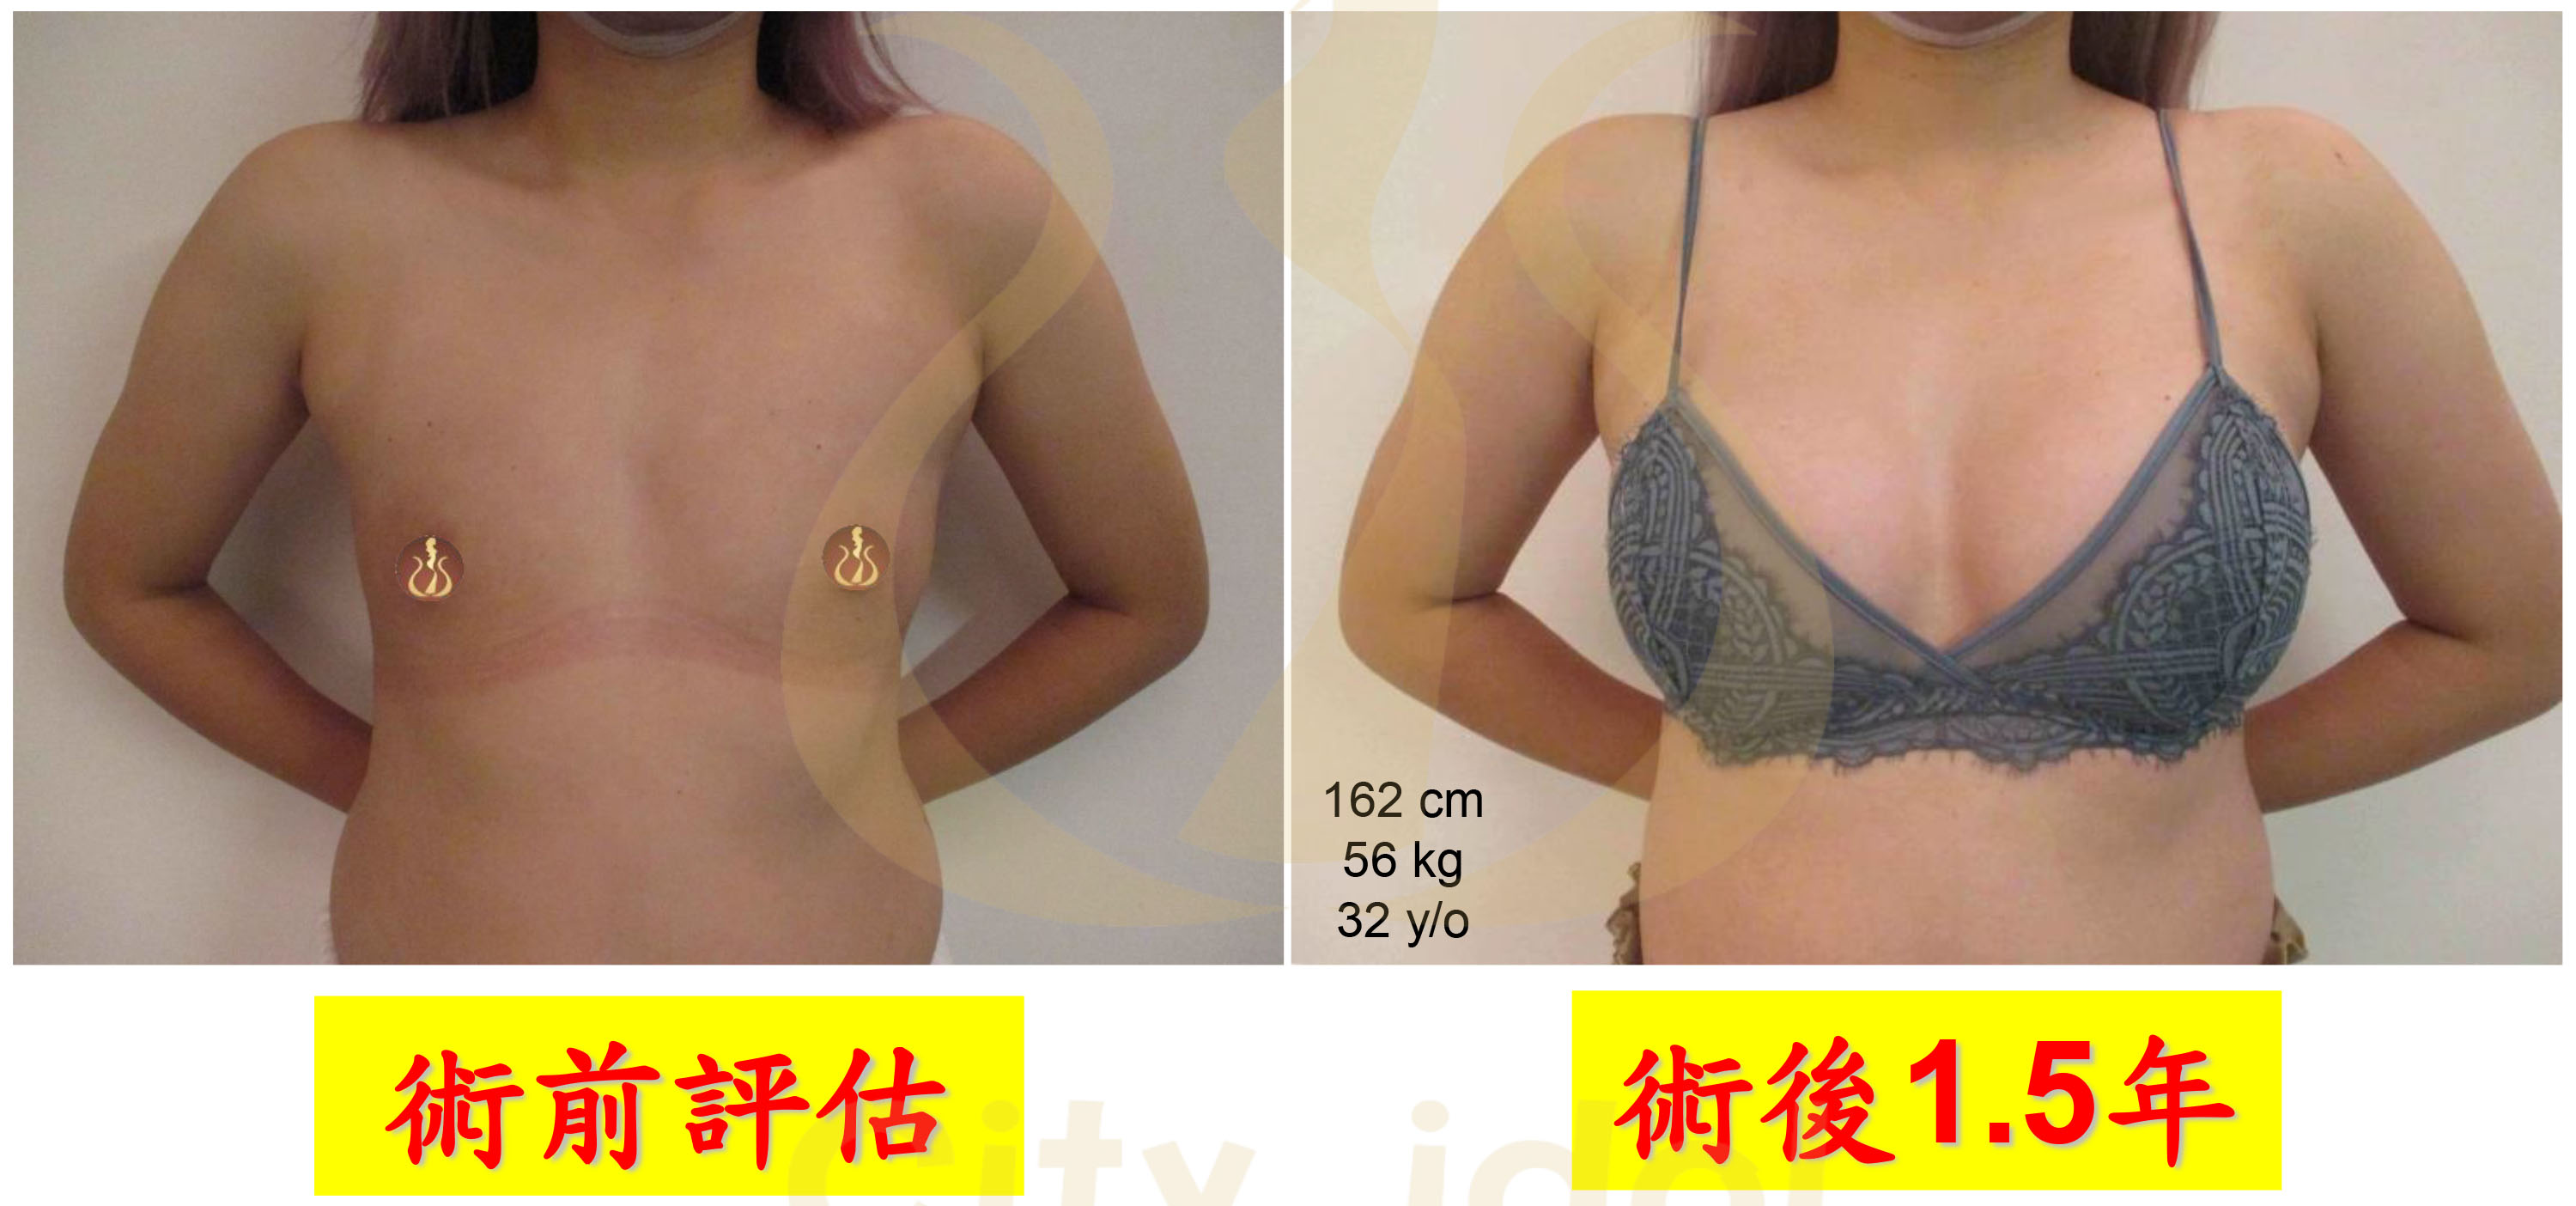 Motiva魔滴圓盤術前及術後1.5個月比較胸罩